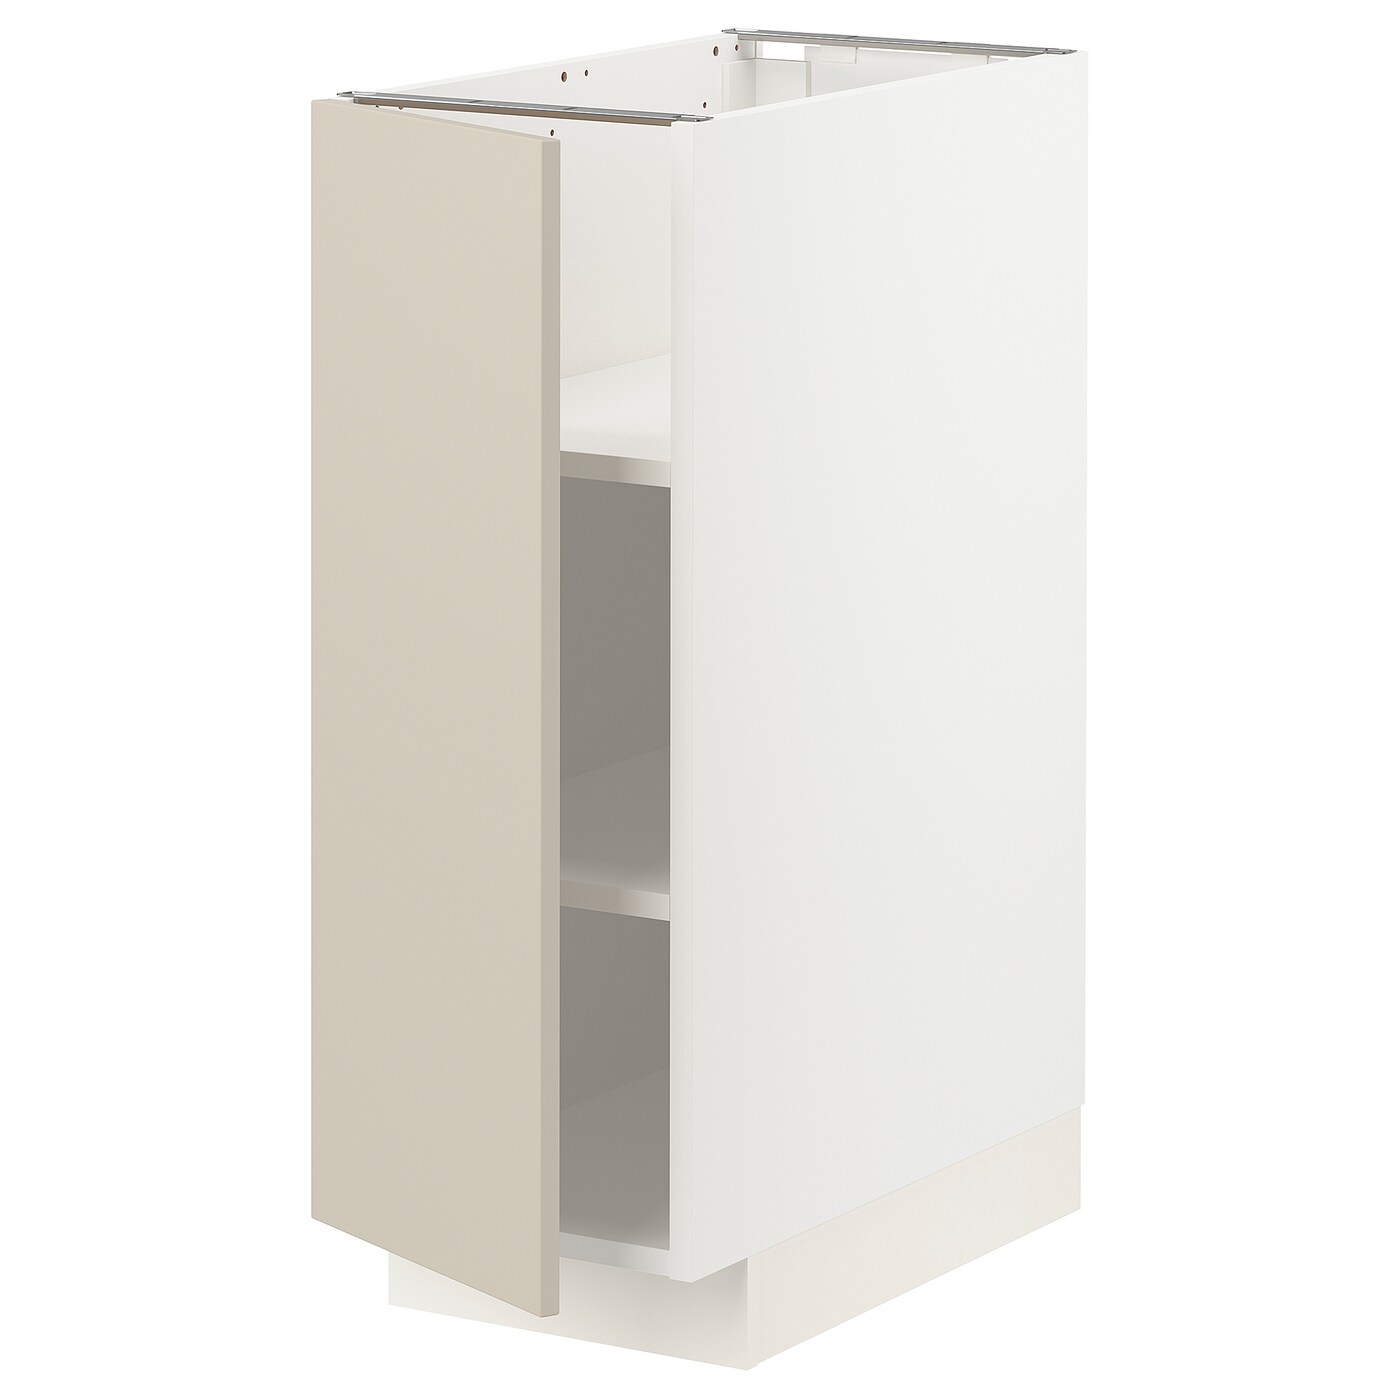 Напольный кухонный шкаф  - IKEA METOD MAXIMERA, 88x62x30см, белый/бежевый, МЕТОД МАКСИМЕРА ИКЕА